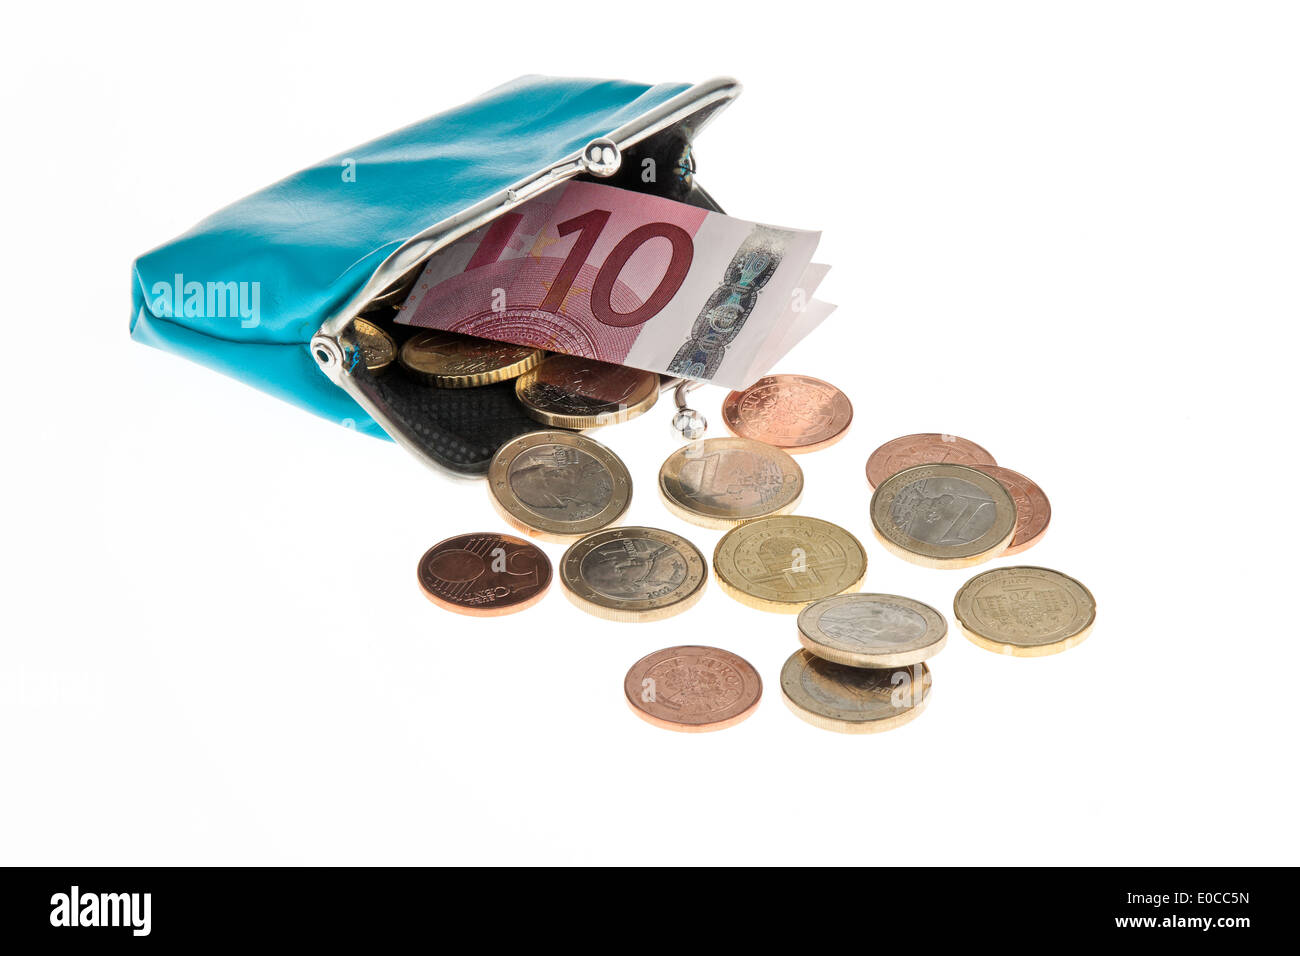 A change purse with euro of bank notes and coins, Eine Geldboerse mit Euro Geldscheinen und Muenzen Stock Photo